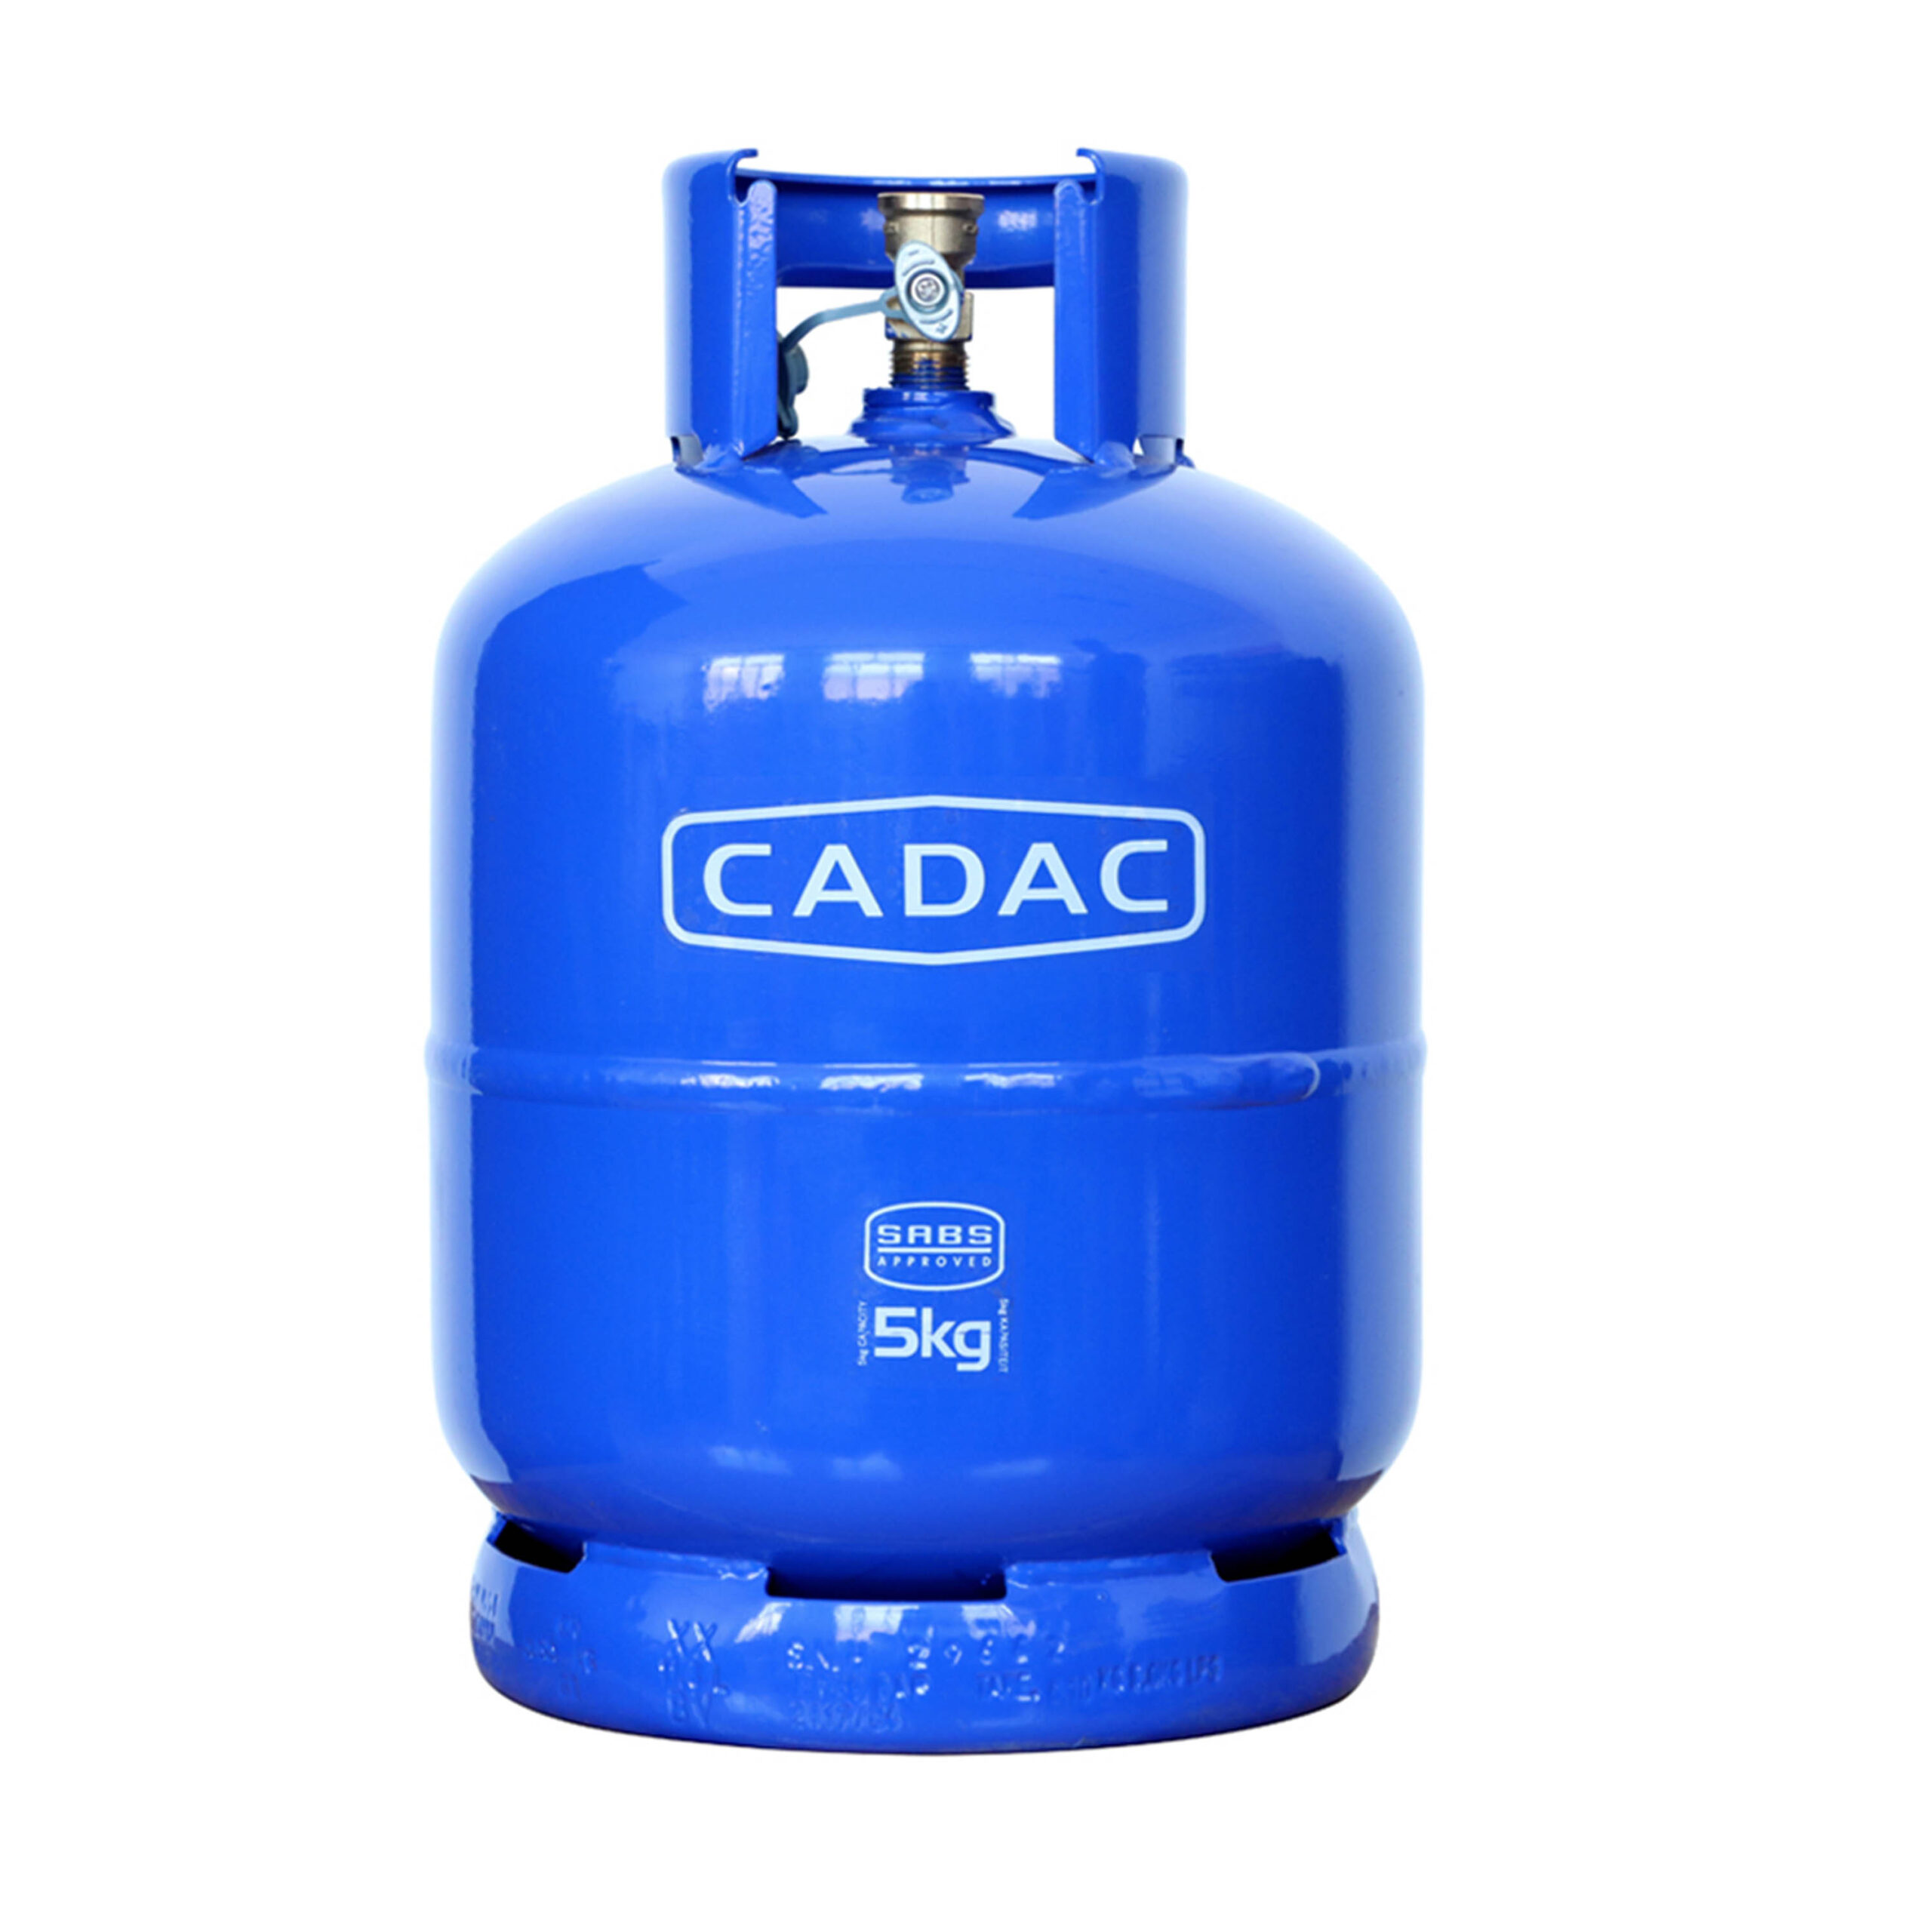 CADAC  5KG GAS
CYLINDER ONLY